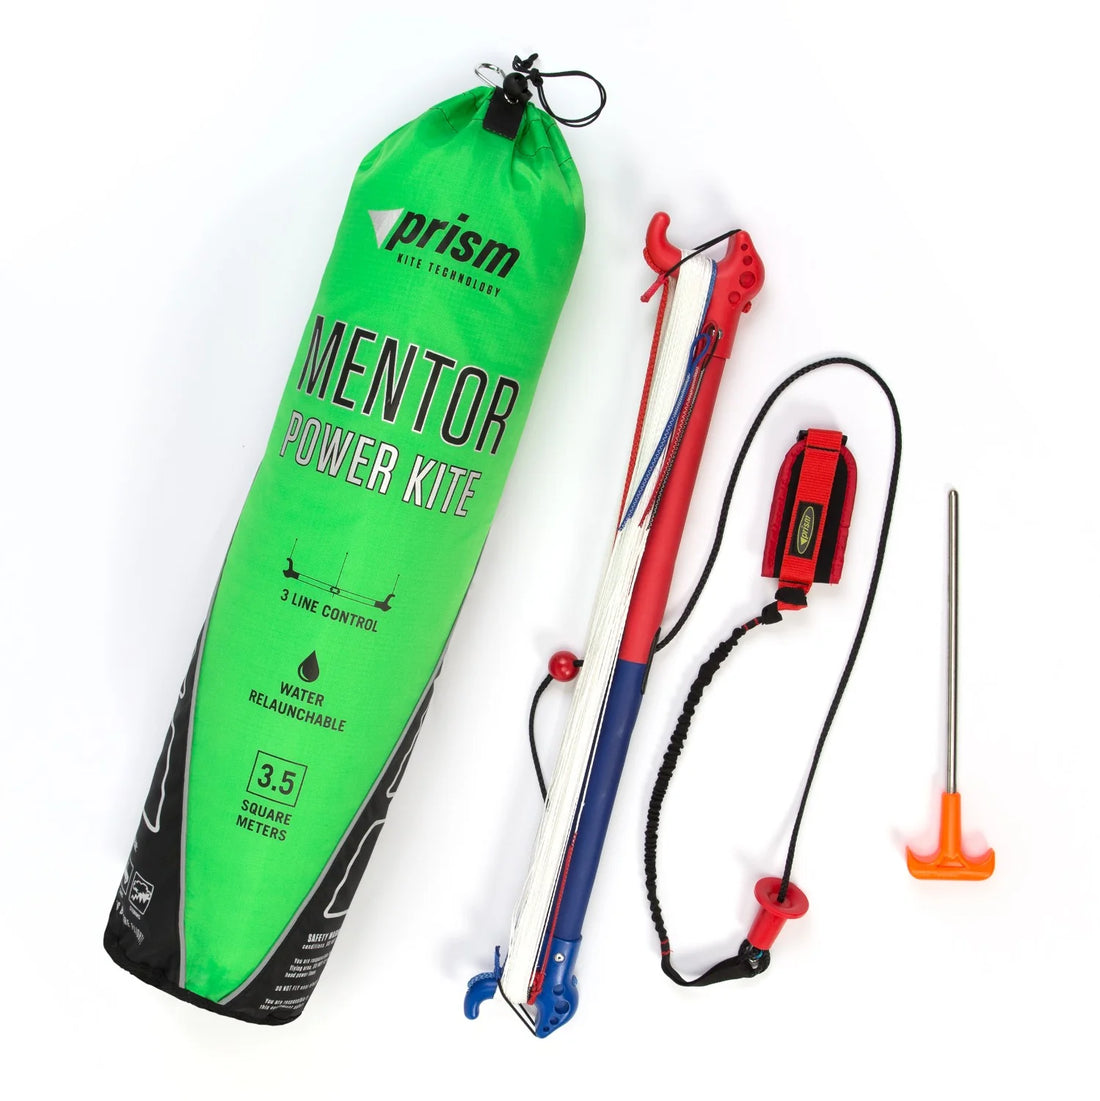 Mentor Power Kite 3.5